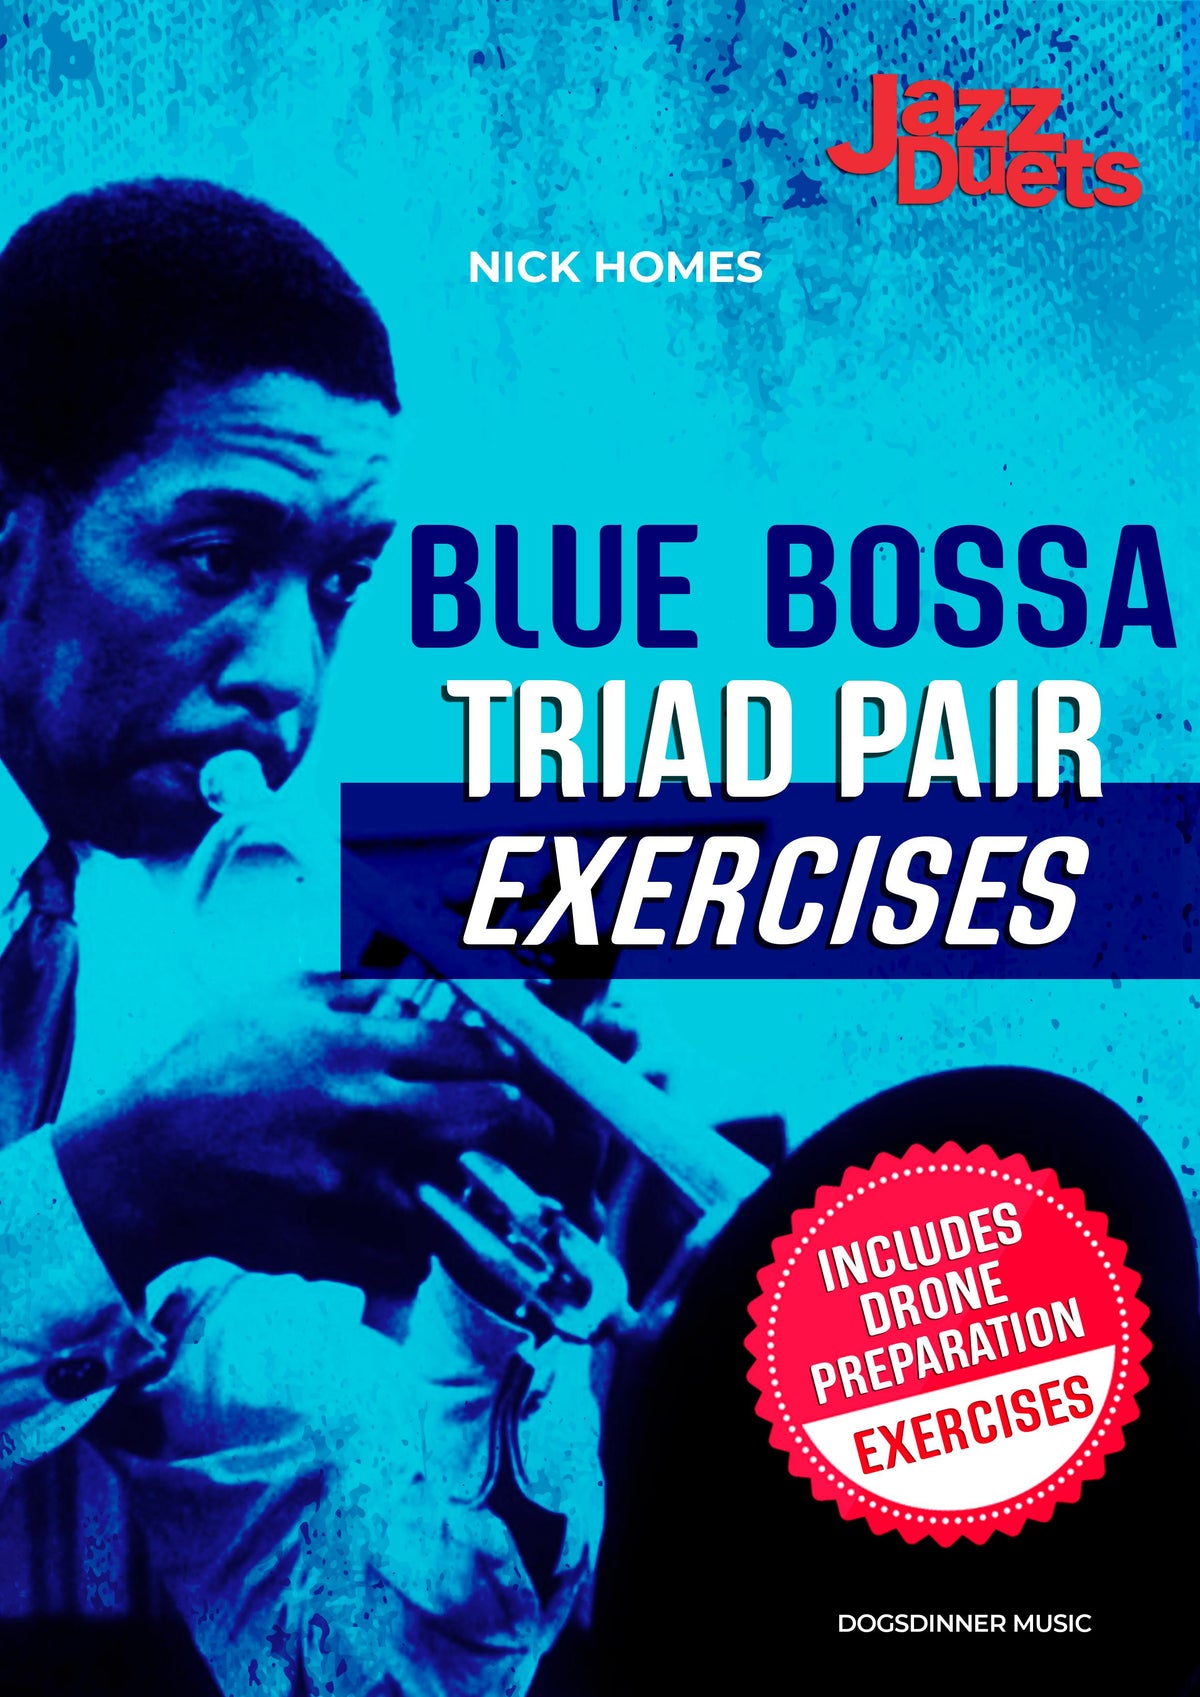 Blue Bossa Triad Pair exercises + Drone preparation Exercises Digital download